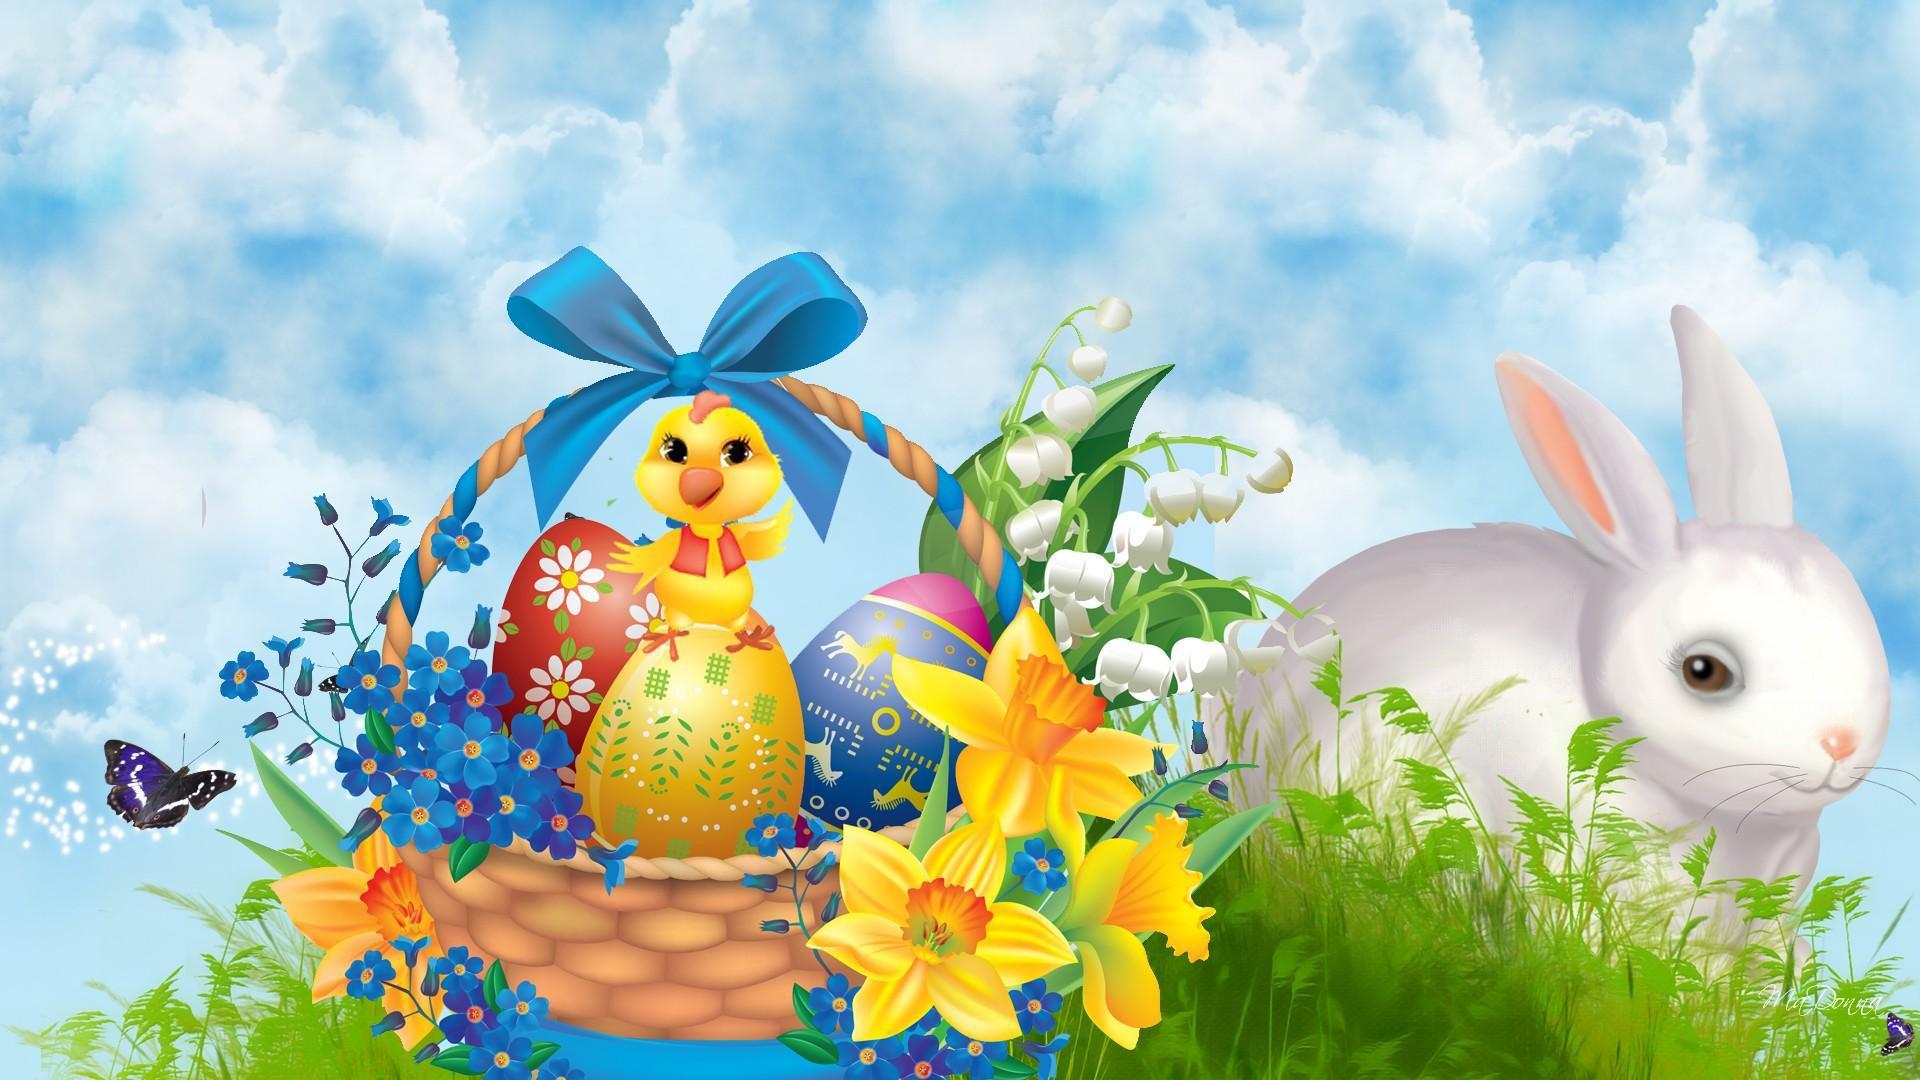 Easter Bunny Chick HD desktop wallpaper, Widescreen, High